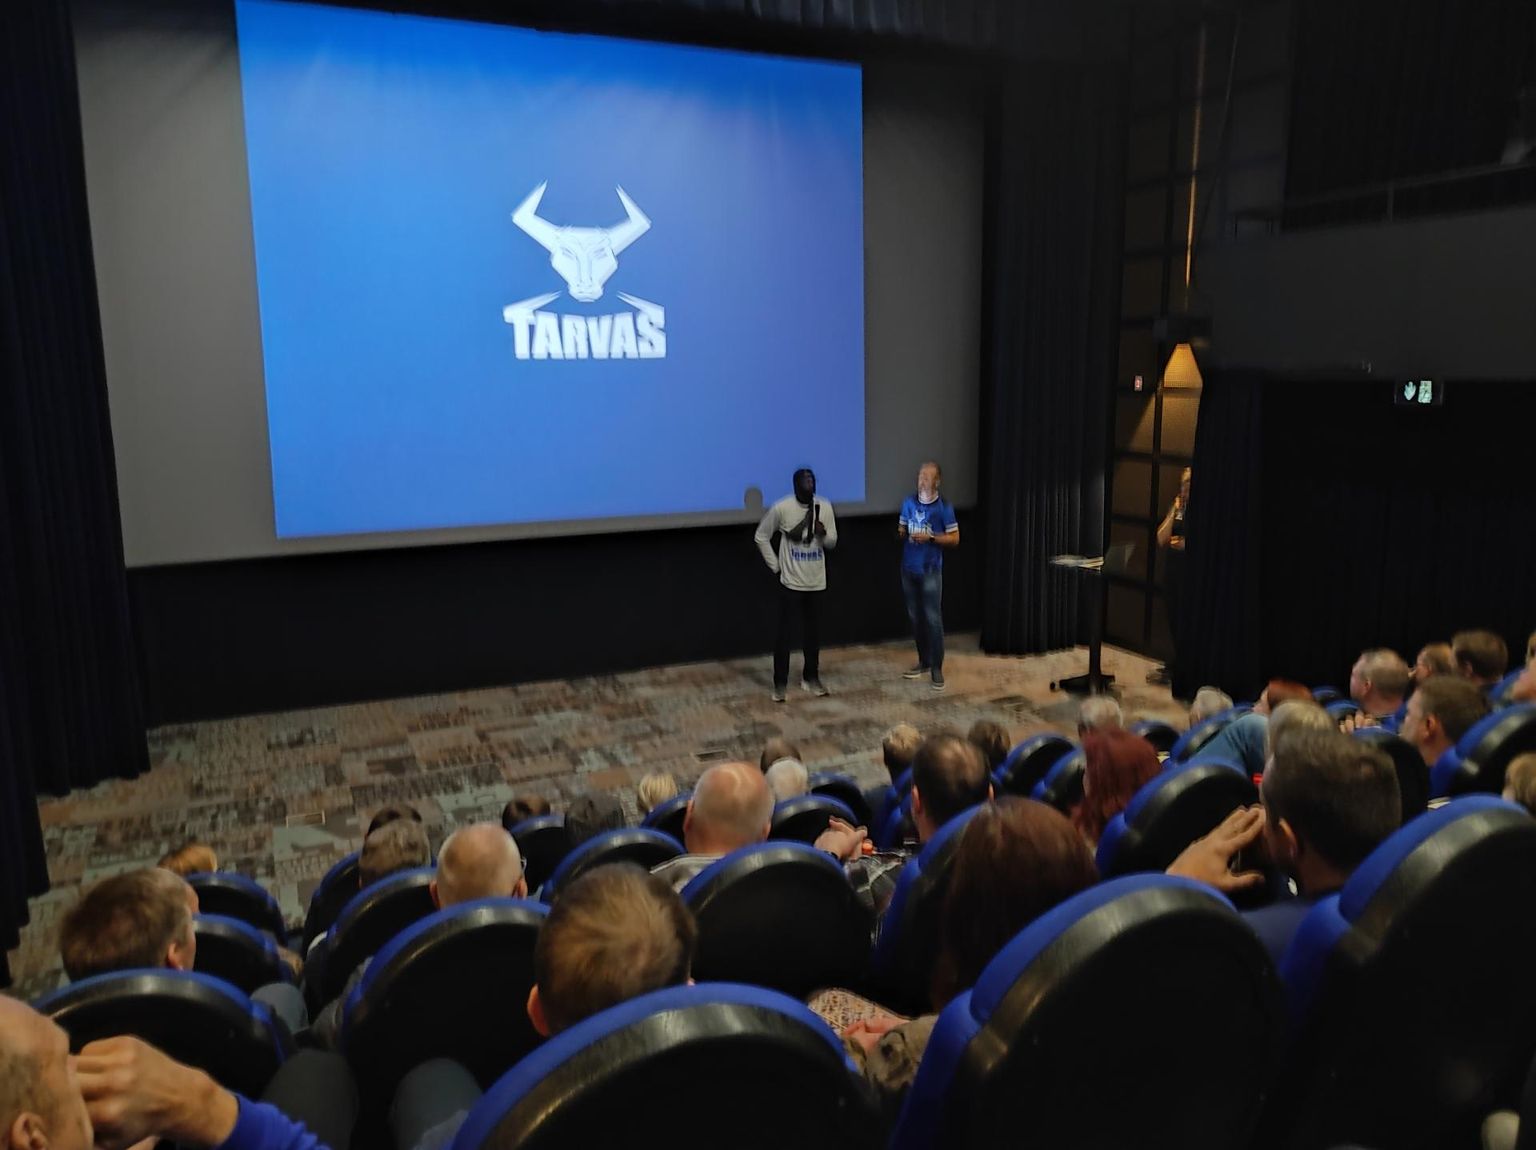 BC Tarvas korvpallimeeskond tutvustas end fännidele Rakvere Teatrikinos. Pärast vaadati ühiselt mängufilmi "Kalev".